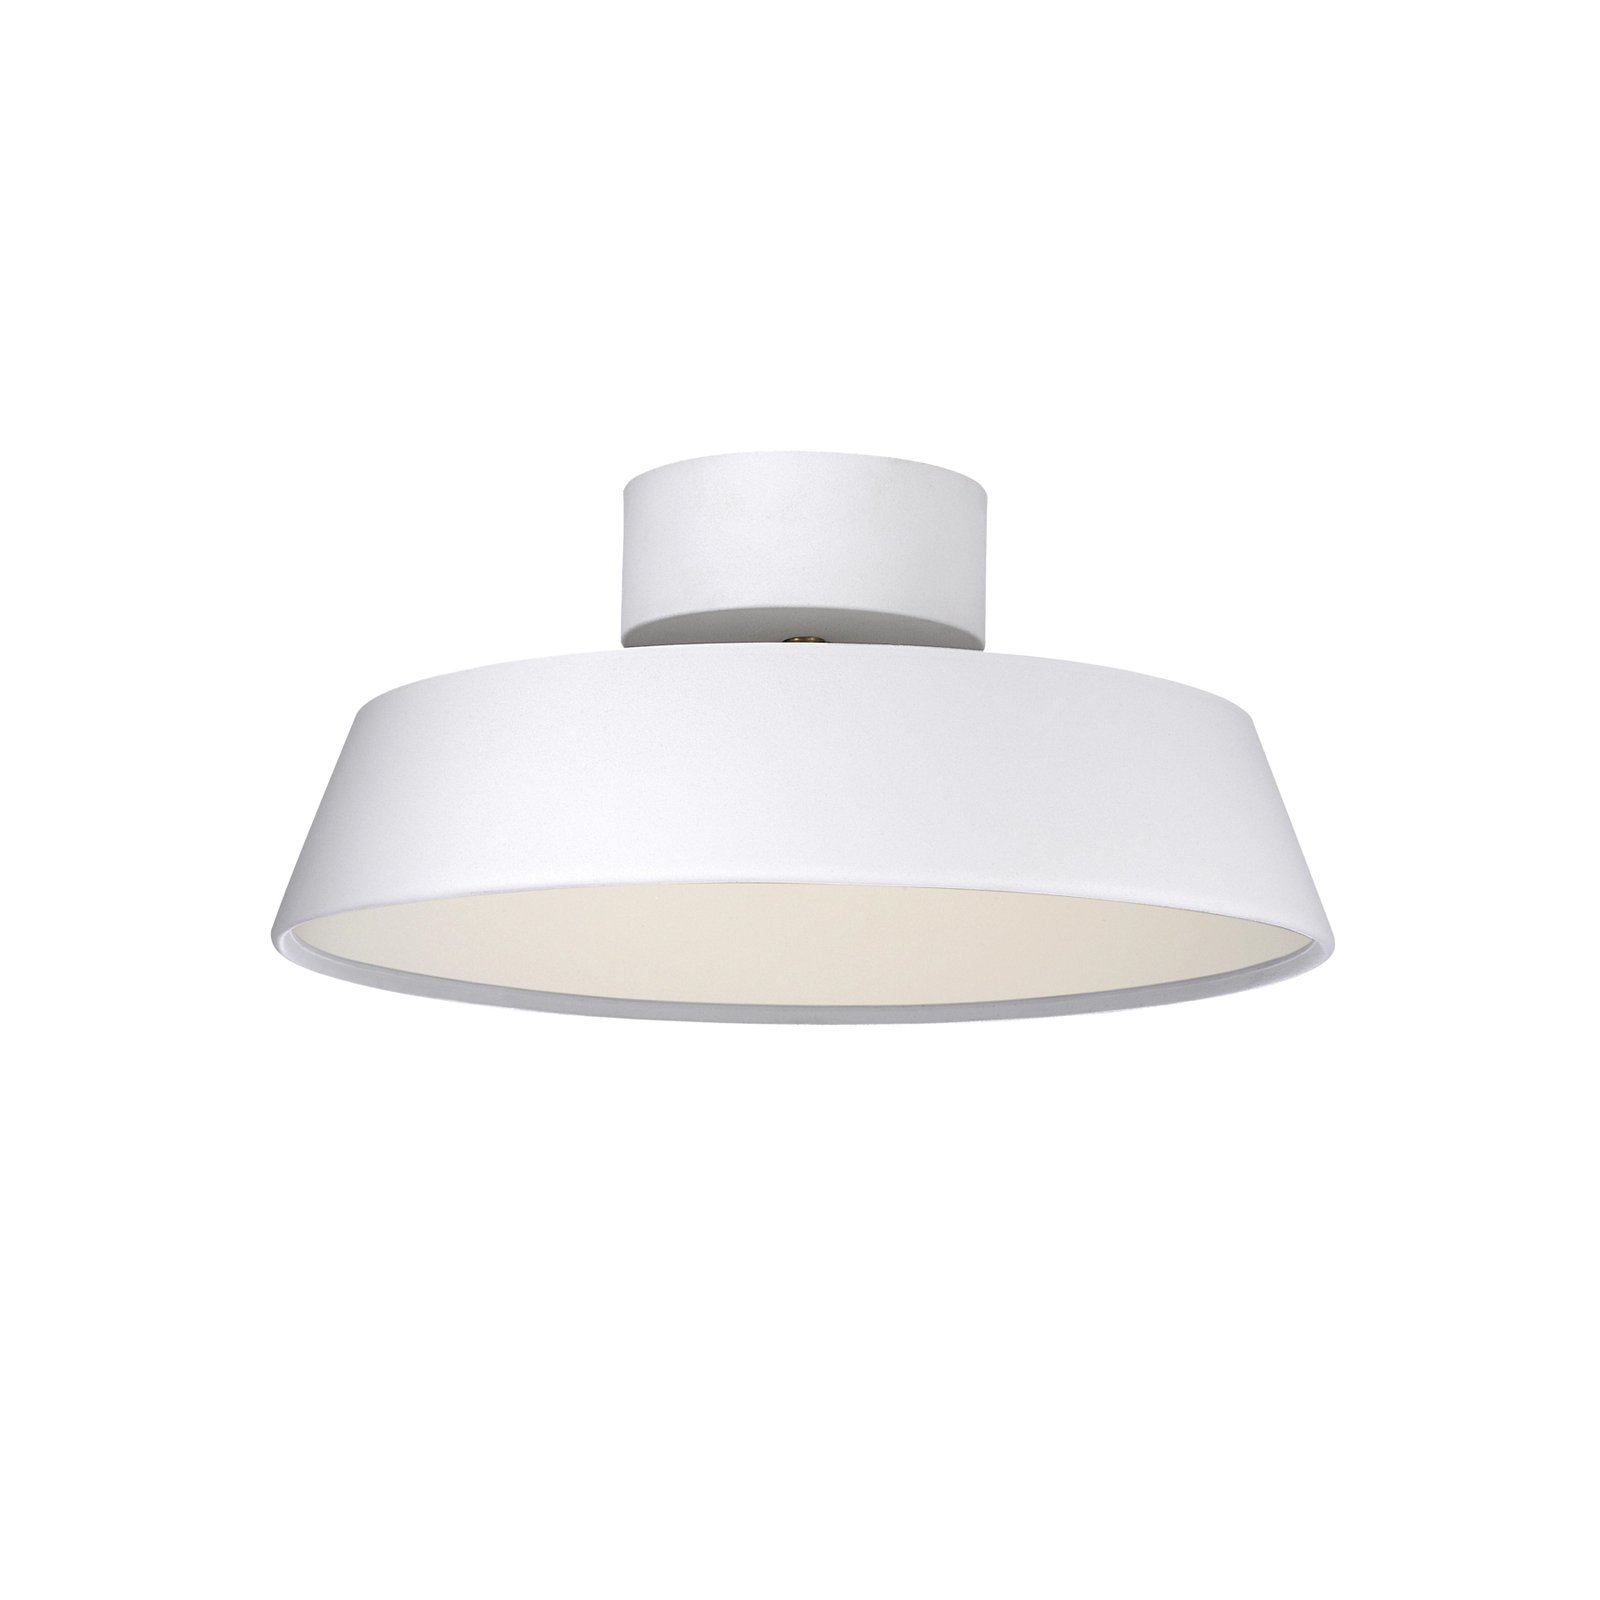 LED stropna svetilka Kaito 2 Dim, bela, Ø 30 cm, z možnostjo zatemnitve